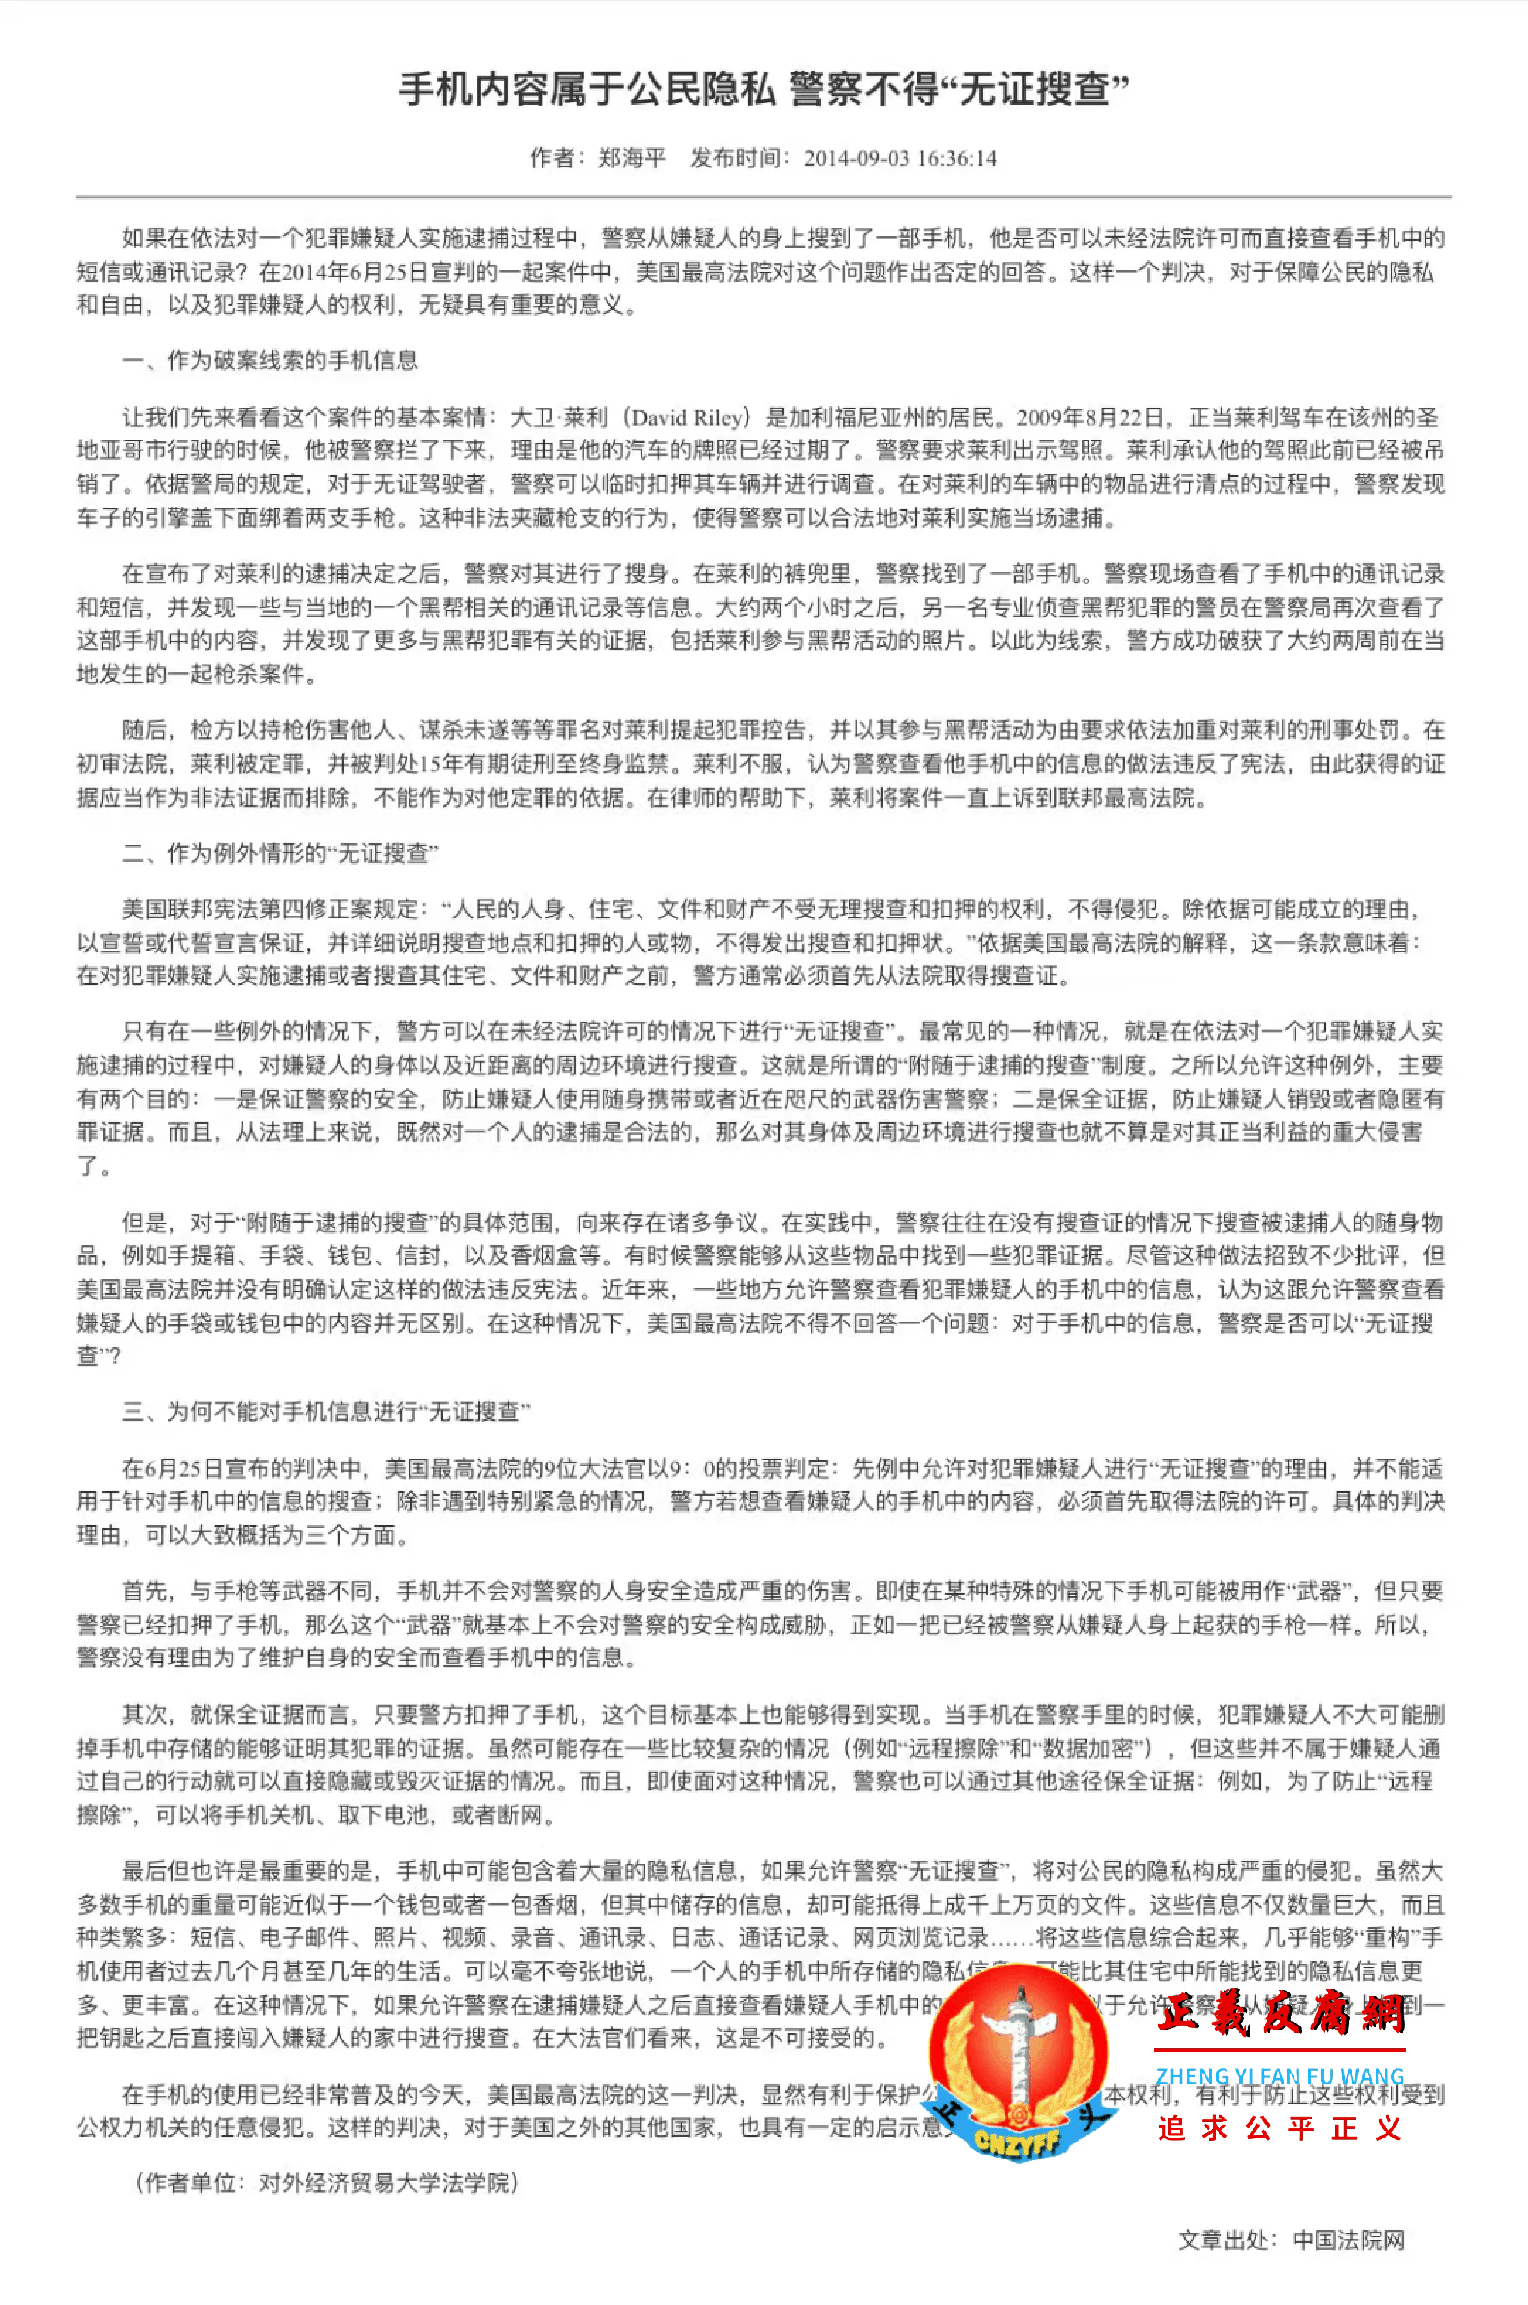 2014年9月3日《中国法院网》发表全文：手机内容属于公民隐私，警察不得“无证搜查”。作者：郑海平，单位：对外经济贸易大学法学院。.png